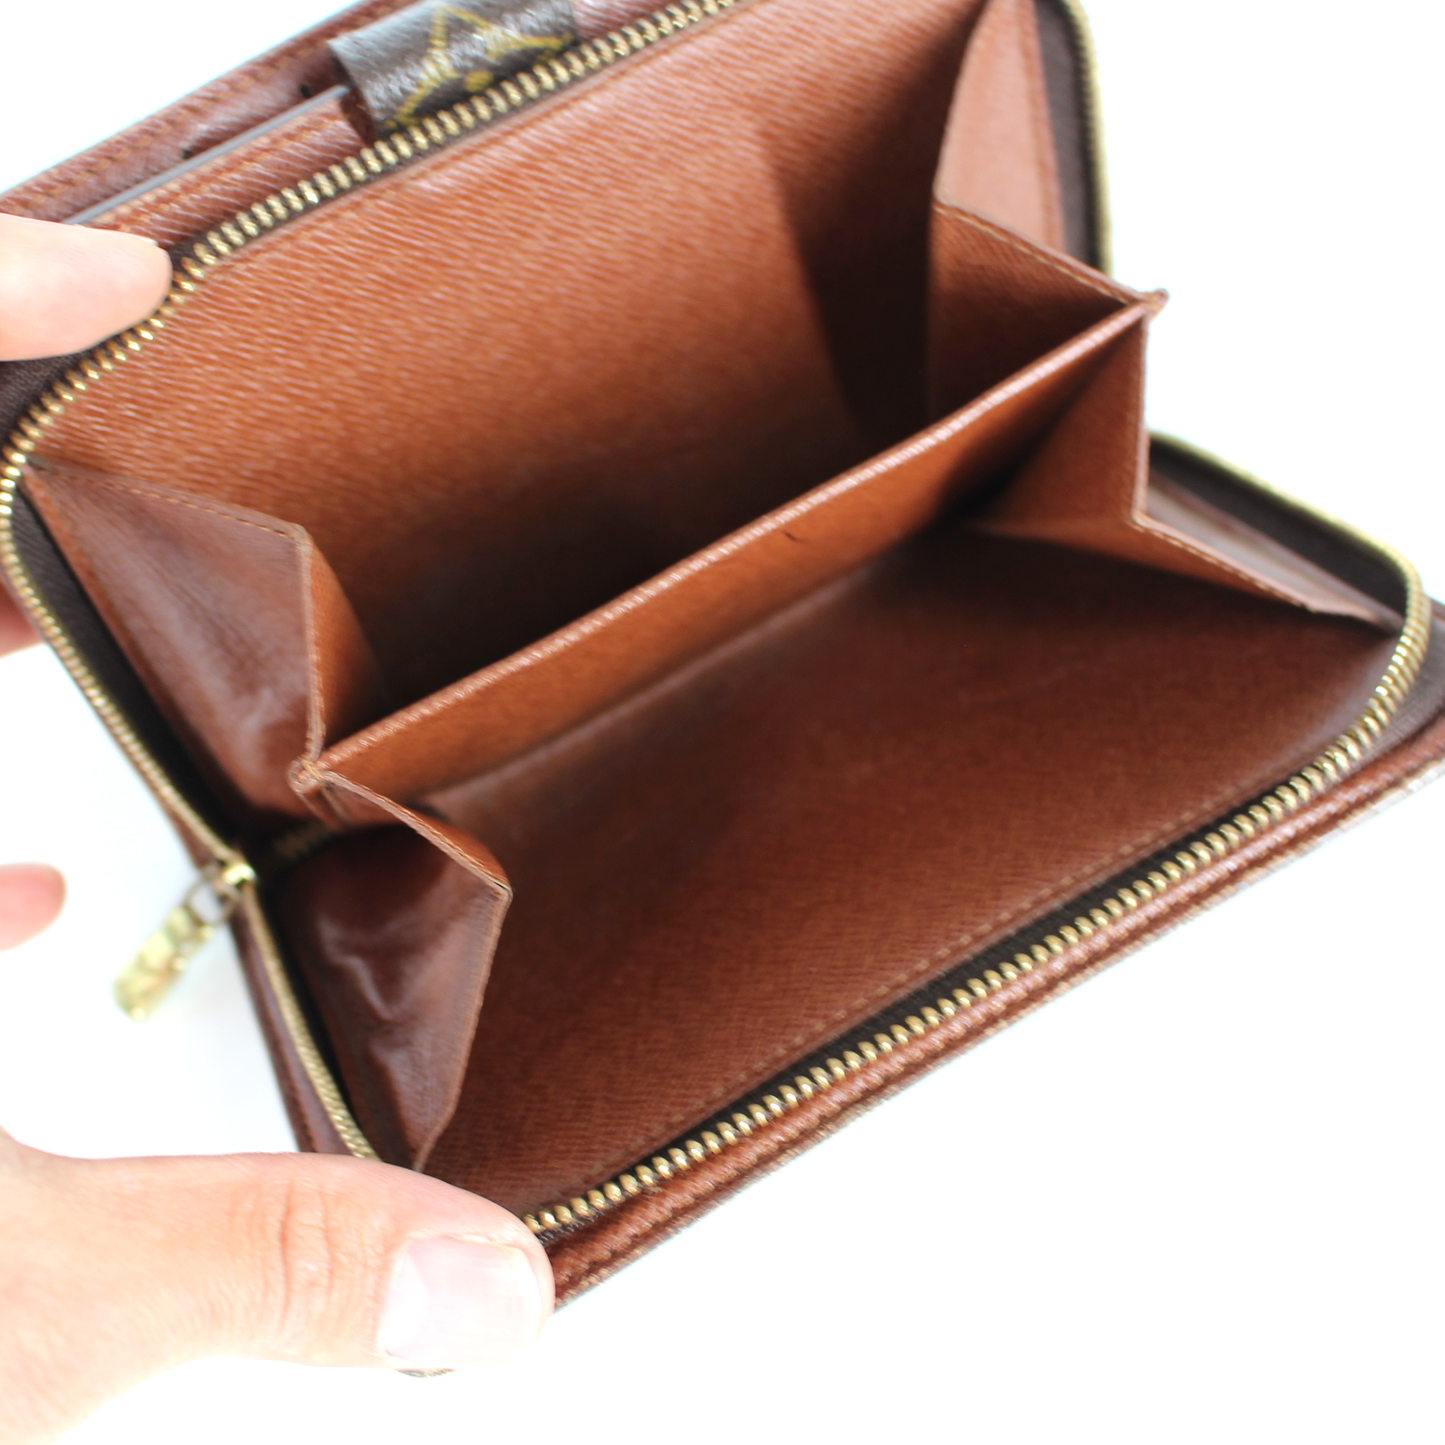 Monogram Porte Papier Zip Wallet – The Brown Bag Boutique